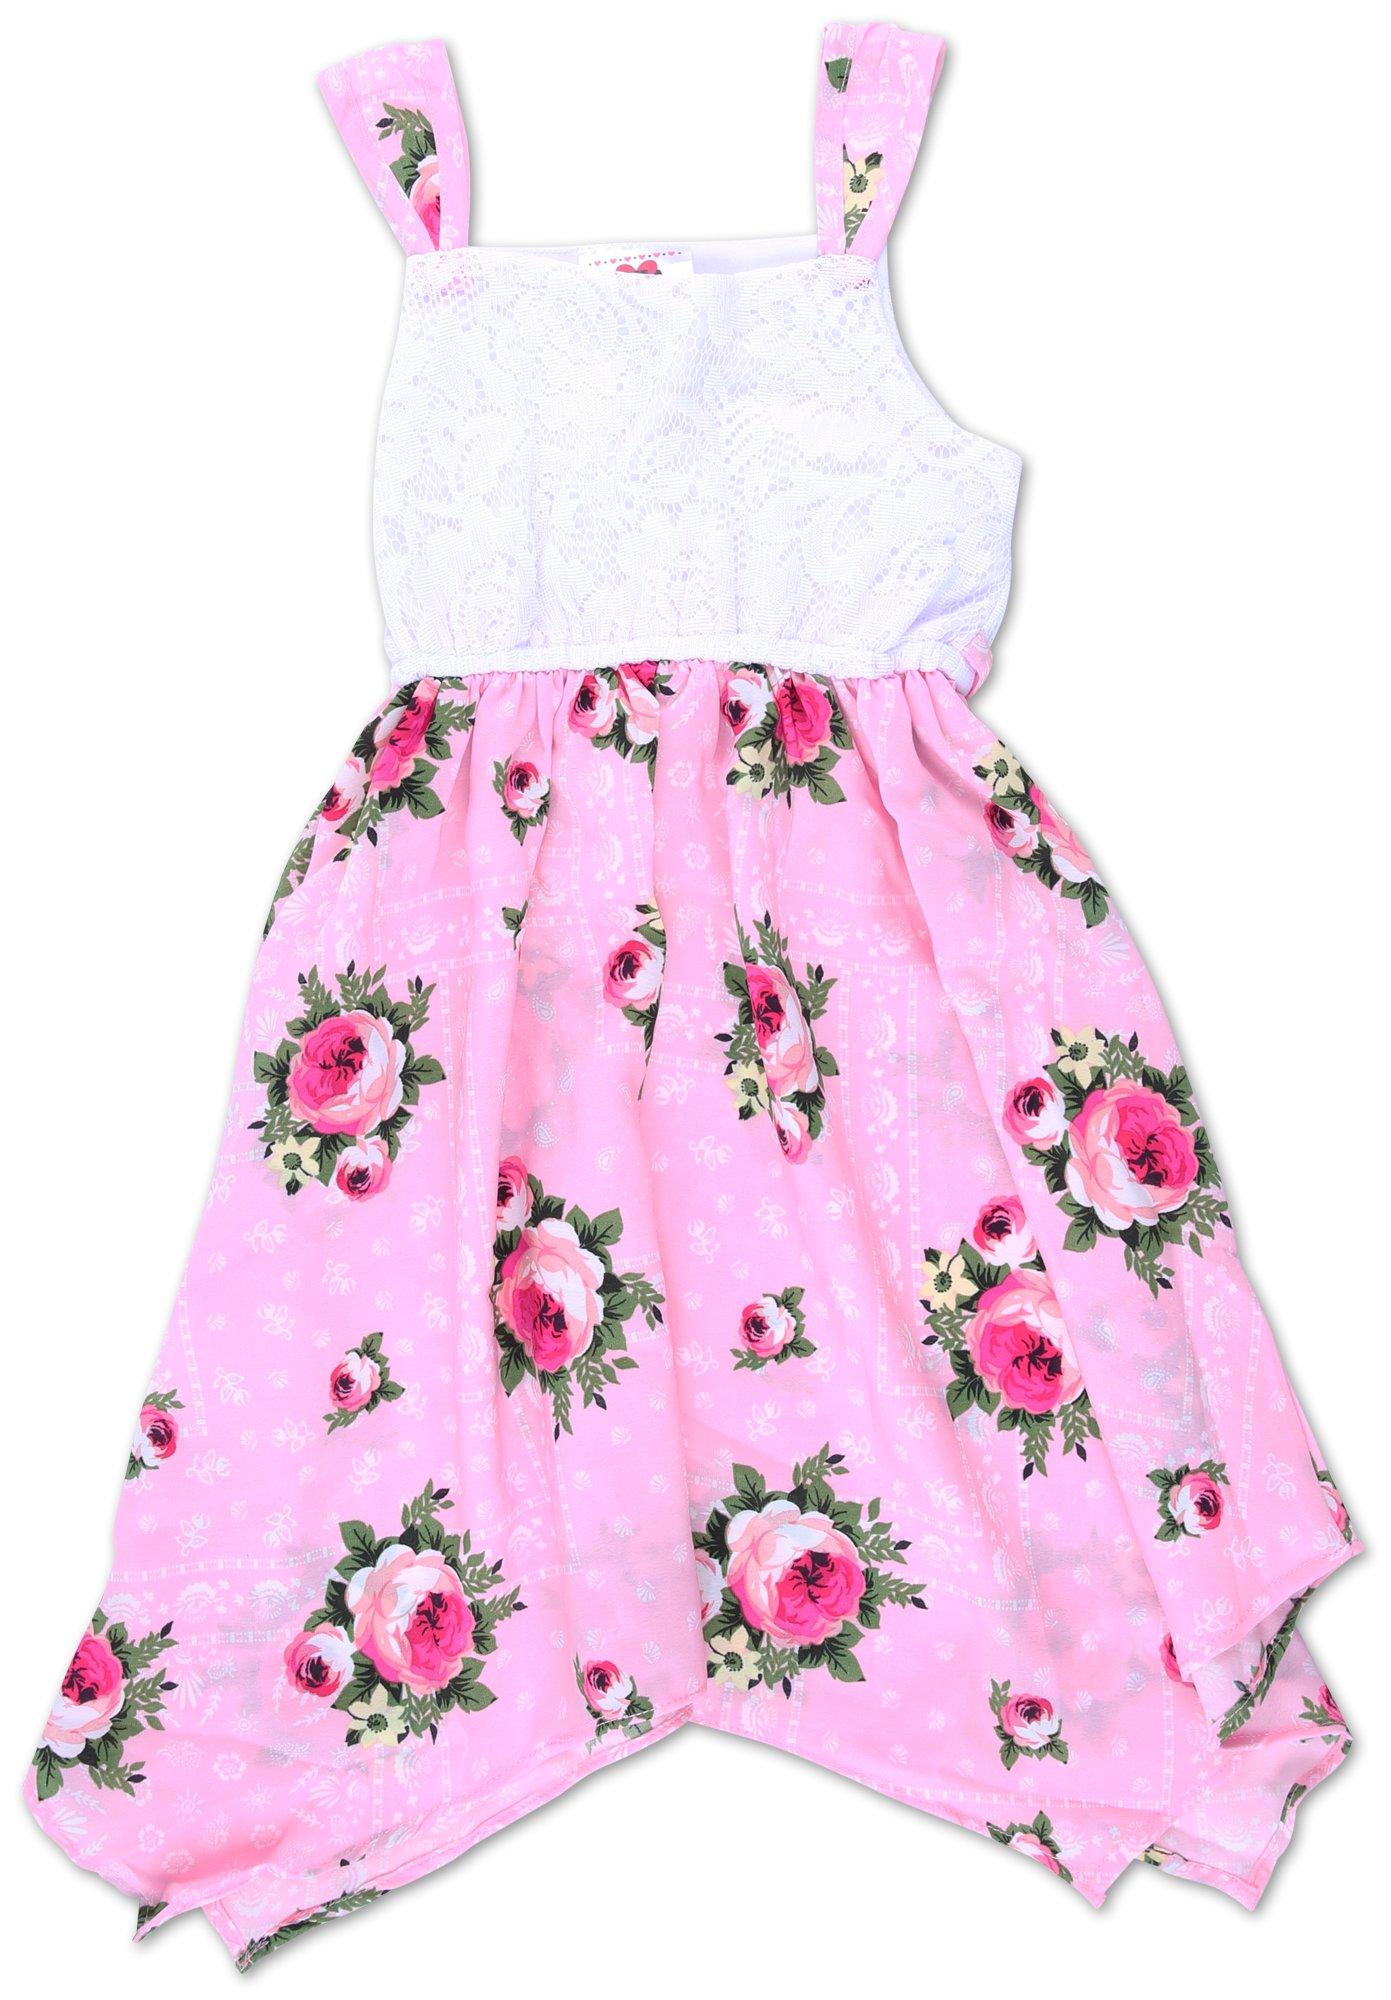 Little Girls Sleeveless Floral Print Dress